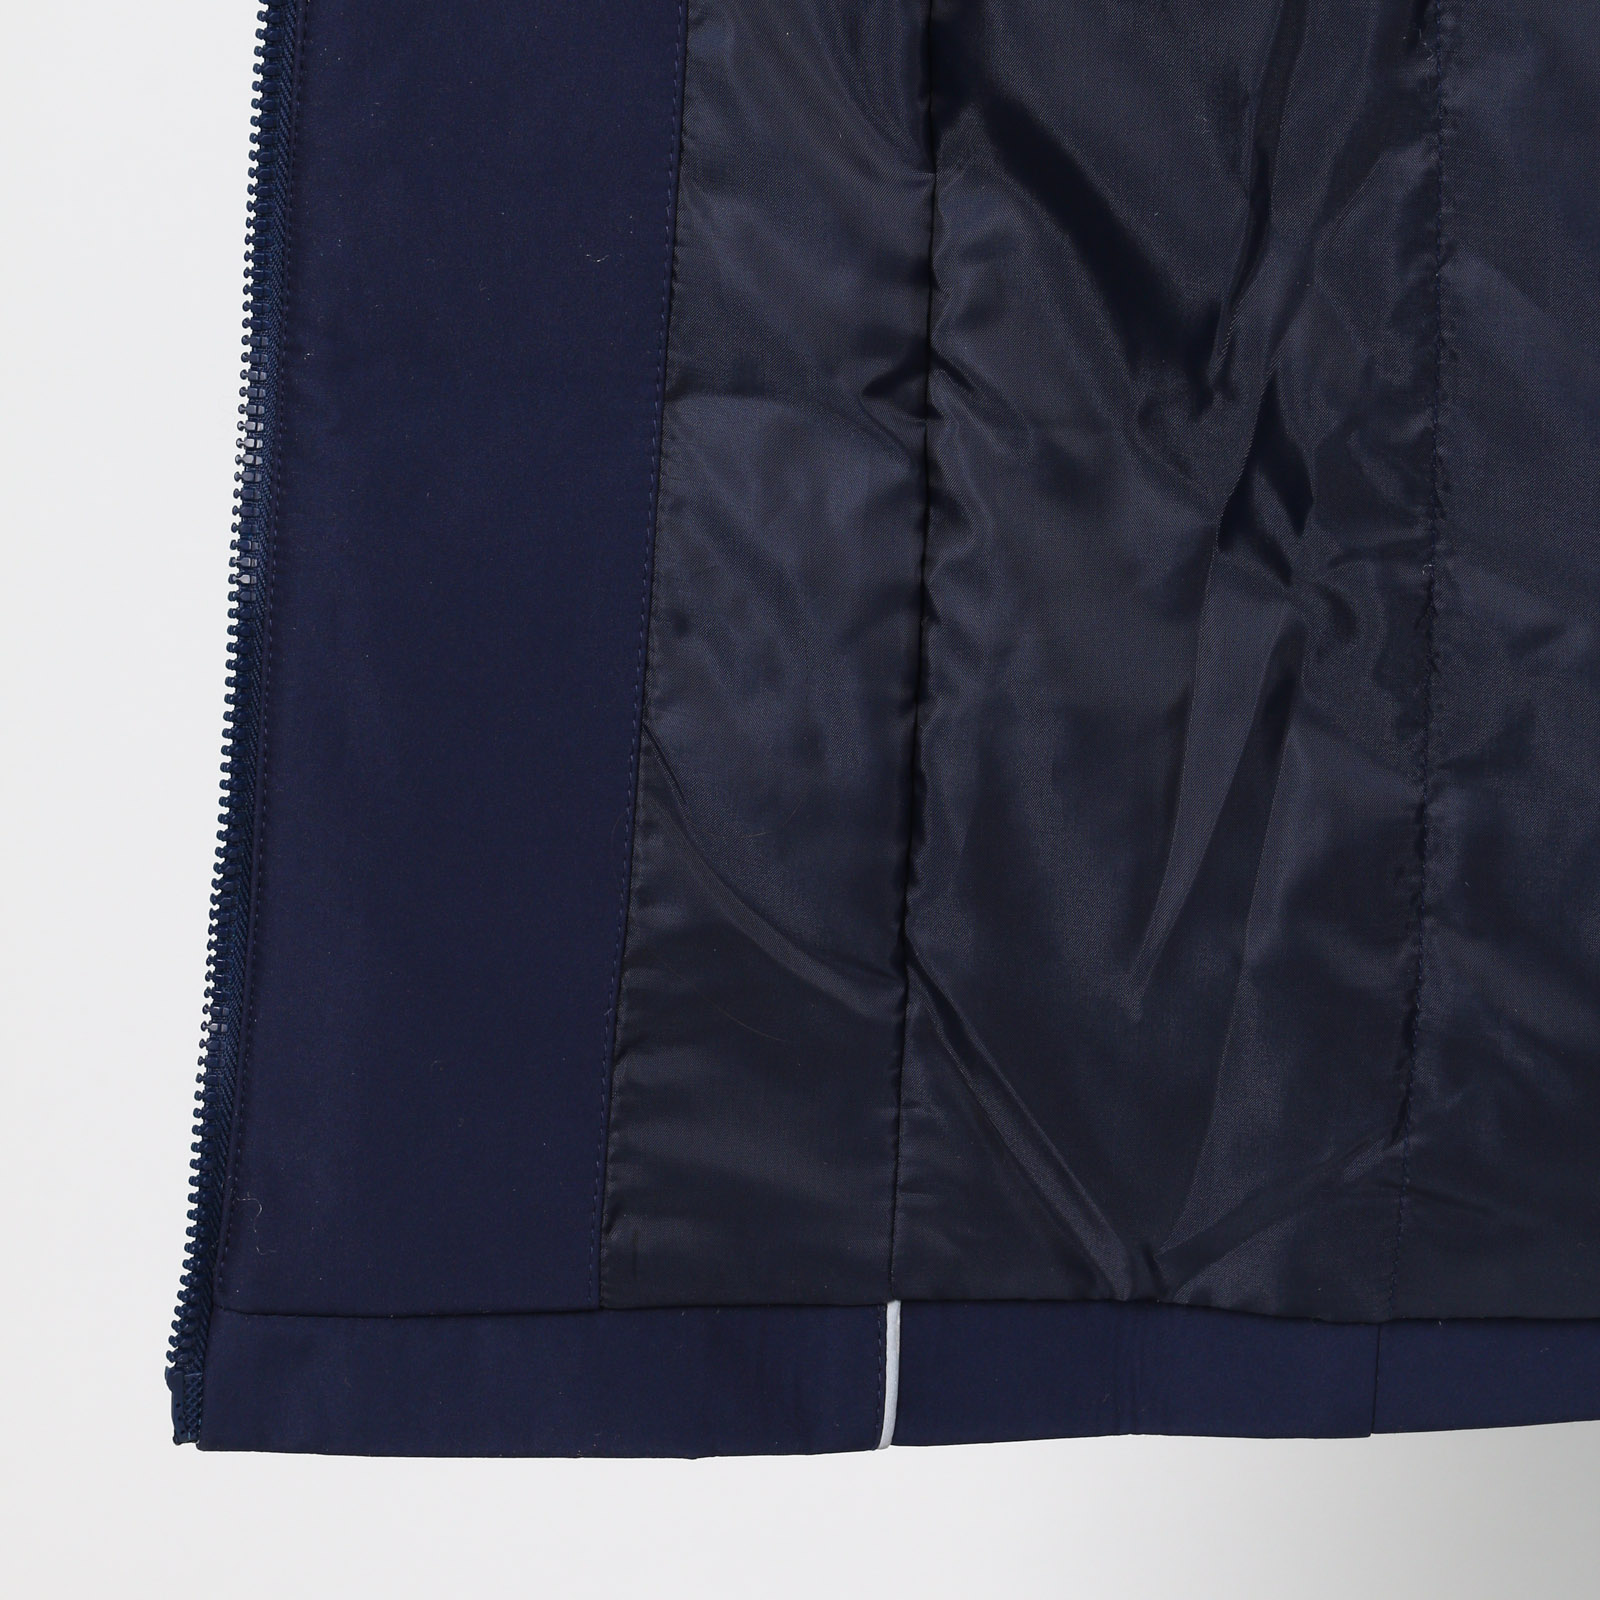 Пальто на молнии с капюшоном и карманами Mio Imperatrice, размер 50, цвет синий - фото 9